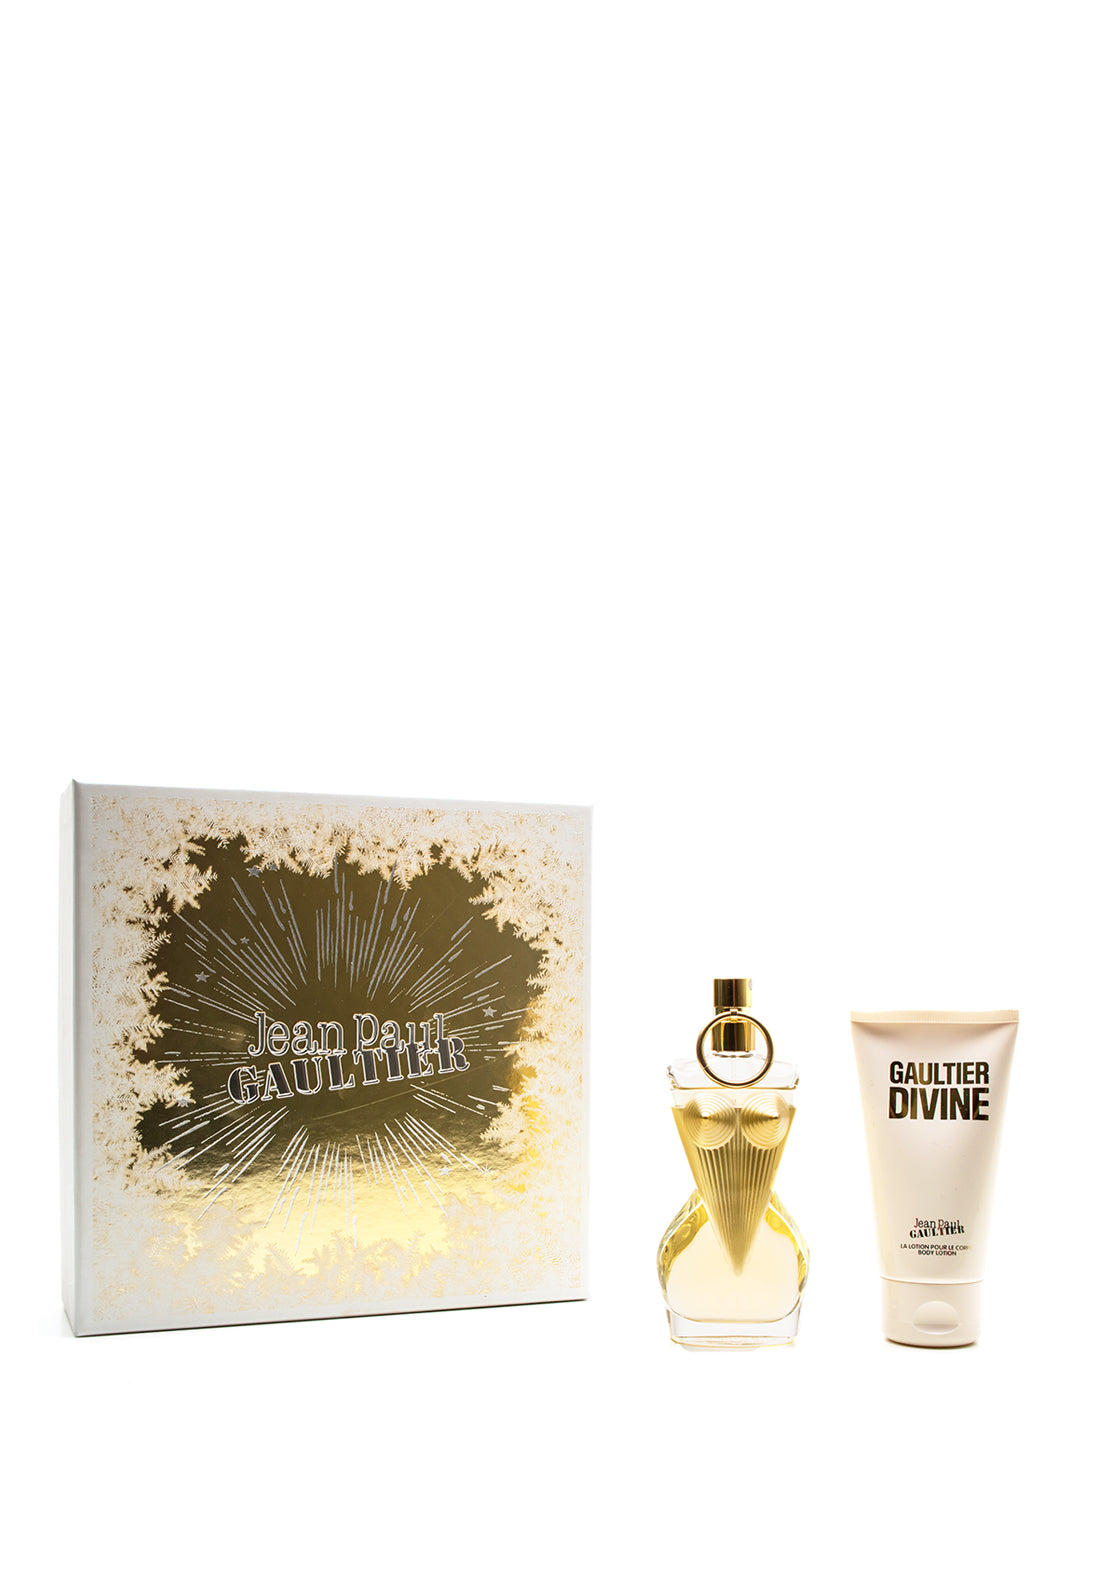 Jean Paul Gaultier Divine Eau De Parfum Gift Set, 50ml